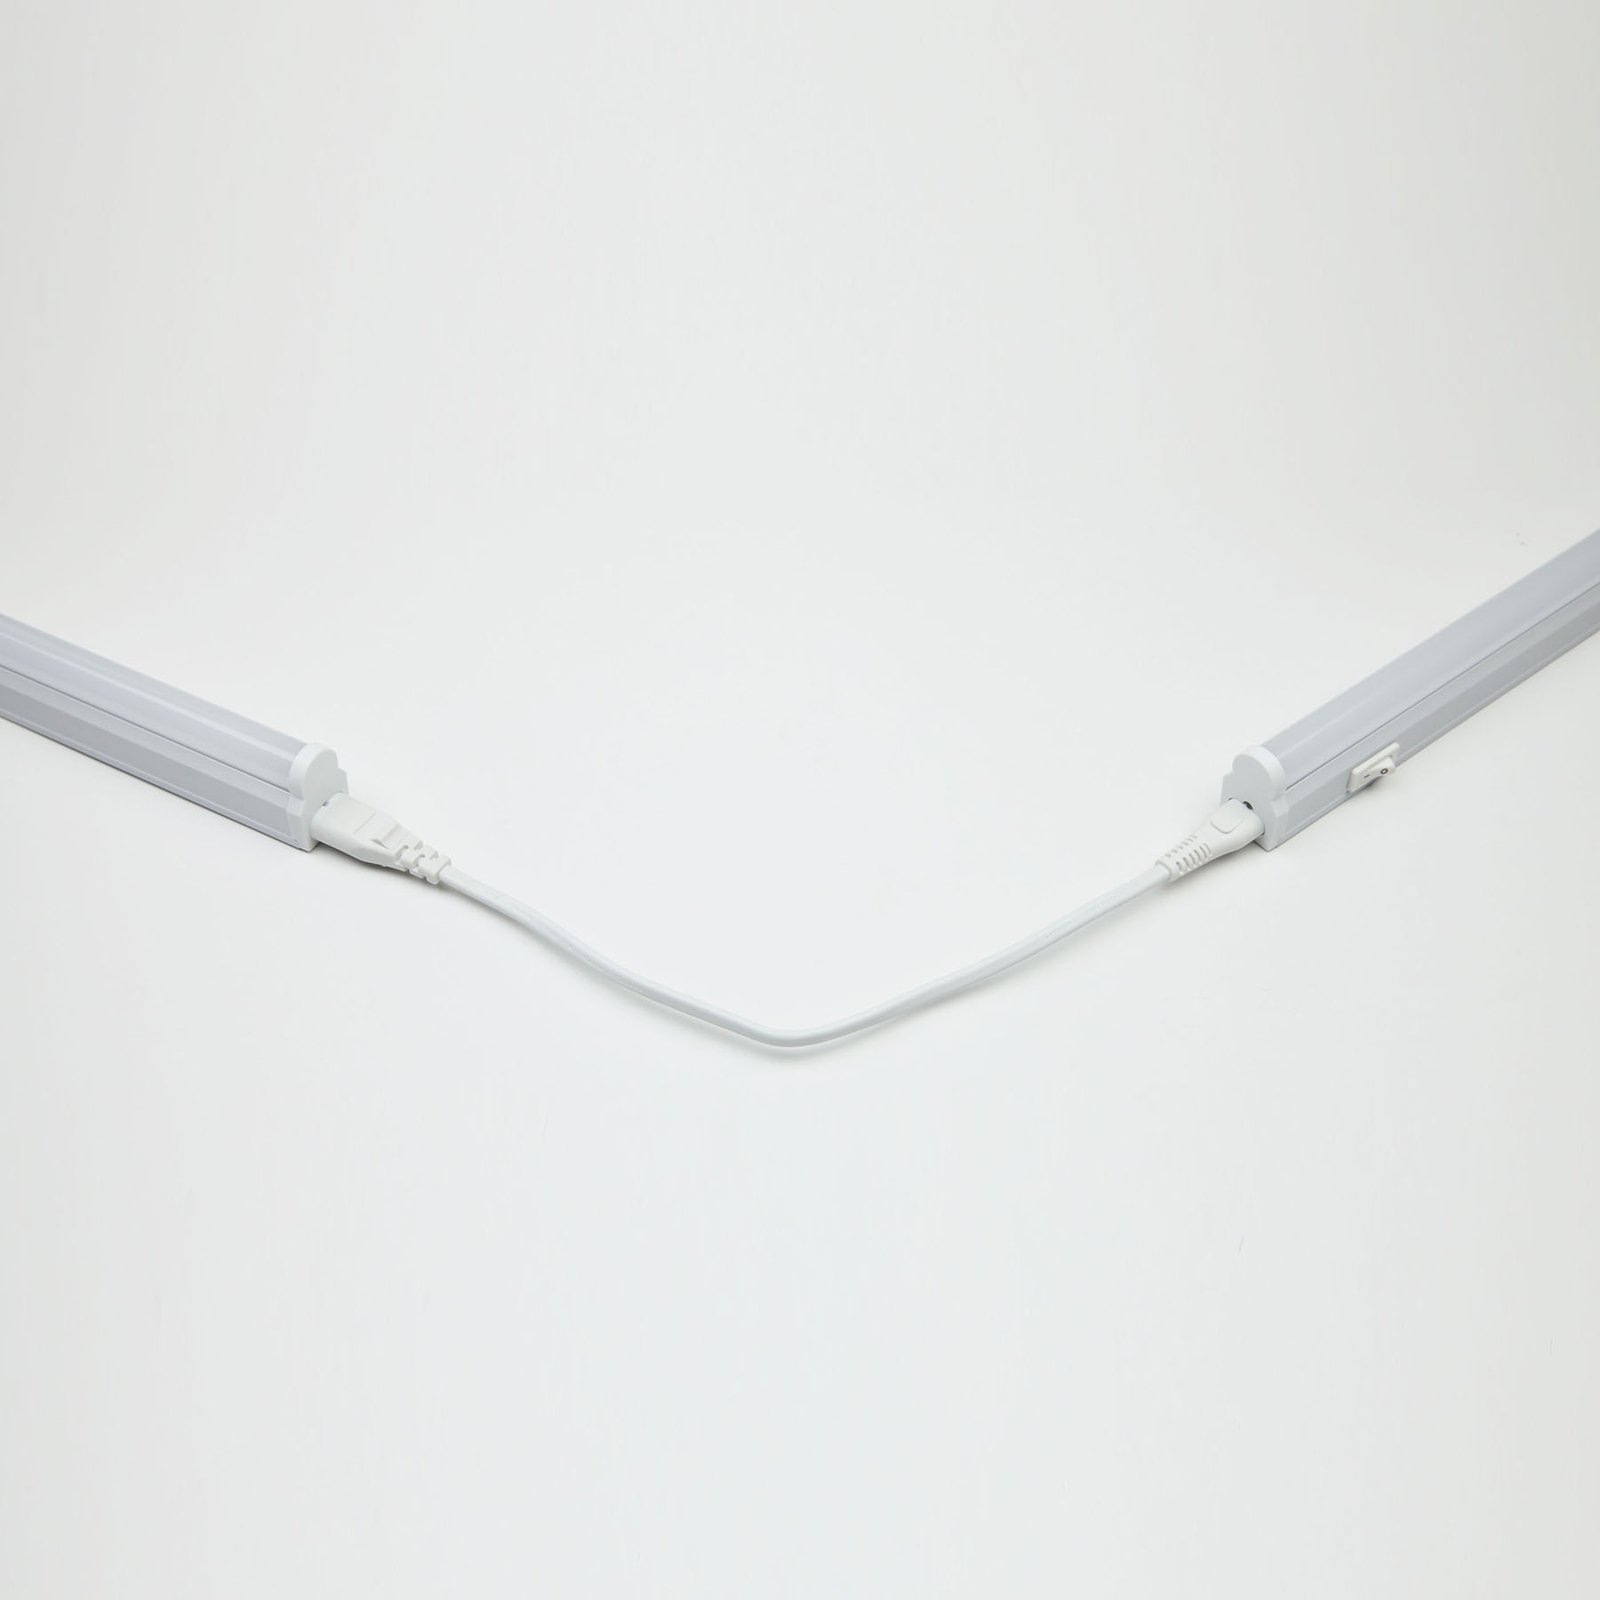 LED světelná lišta 982, délka 31,5 cm